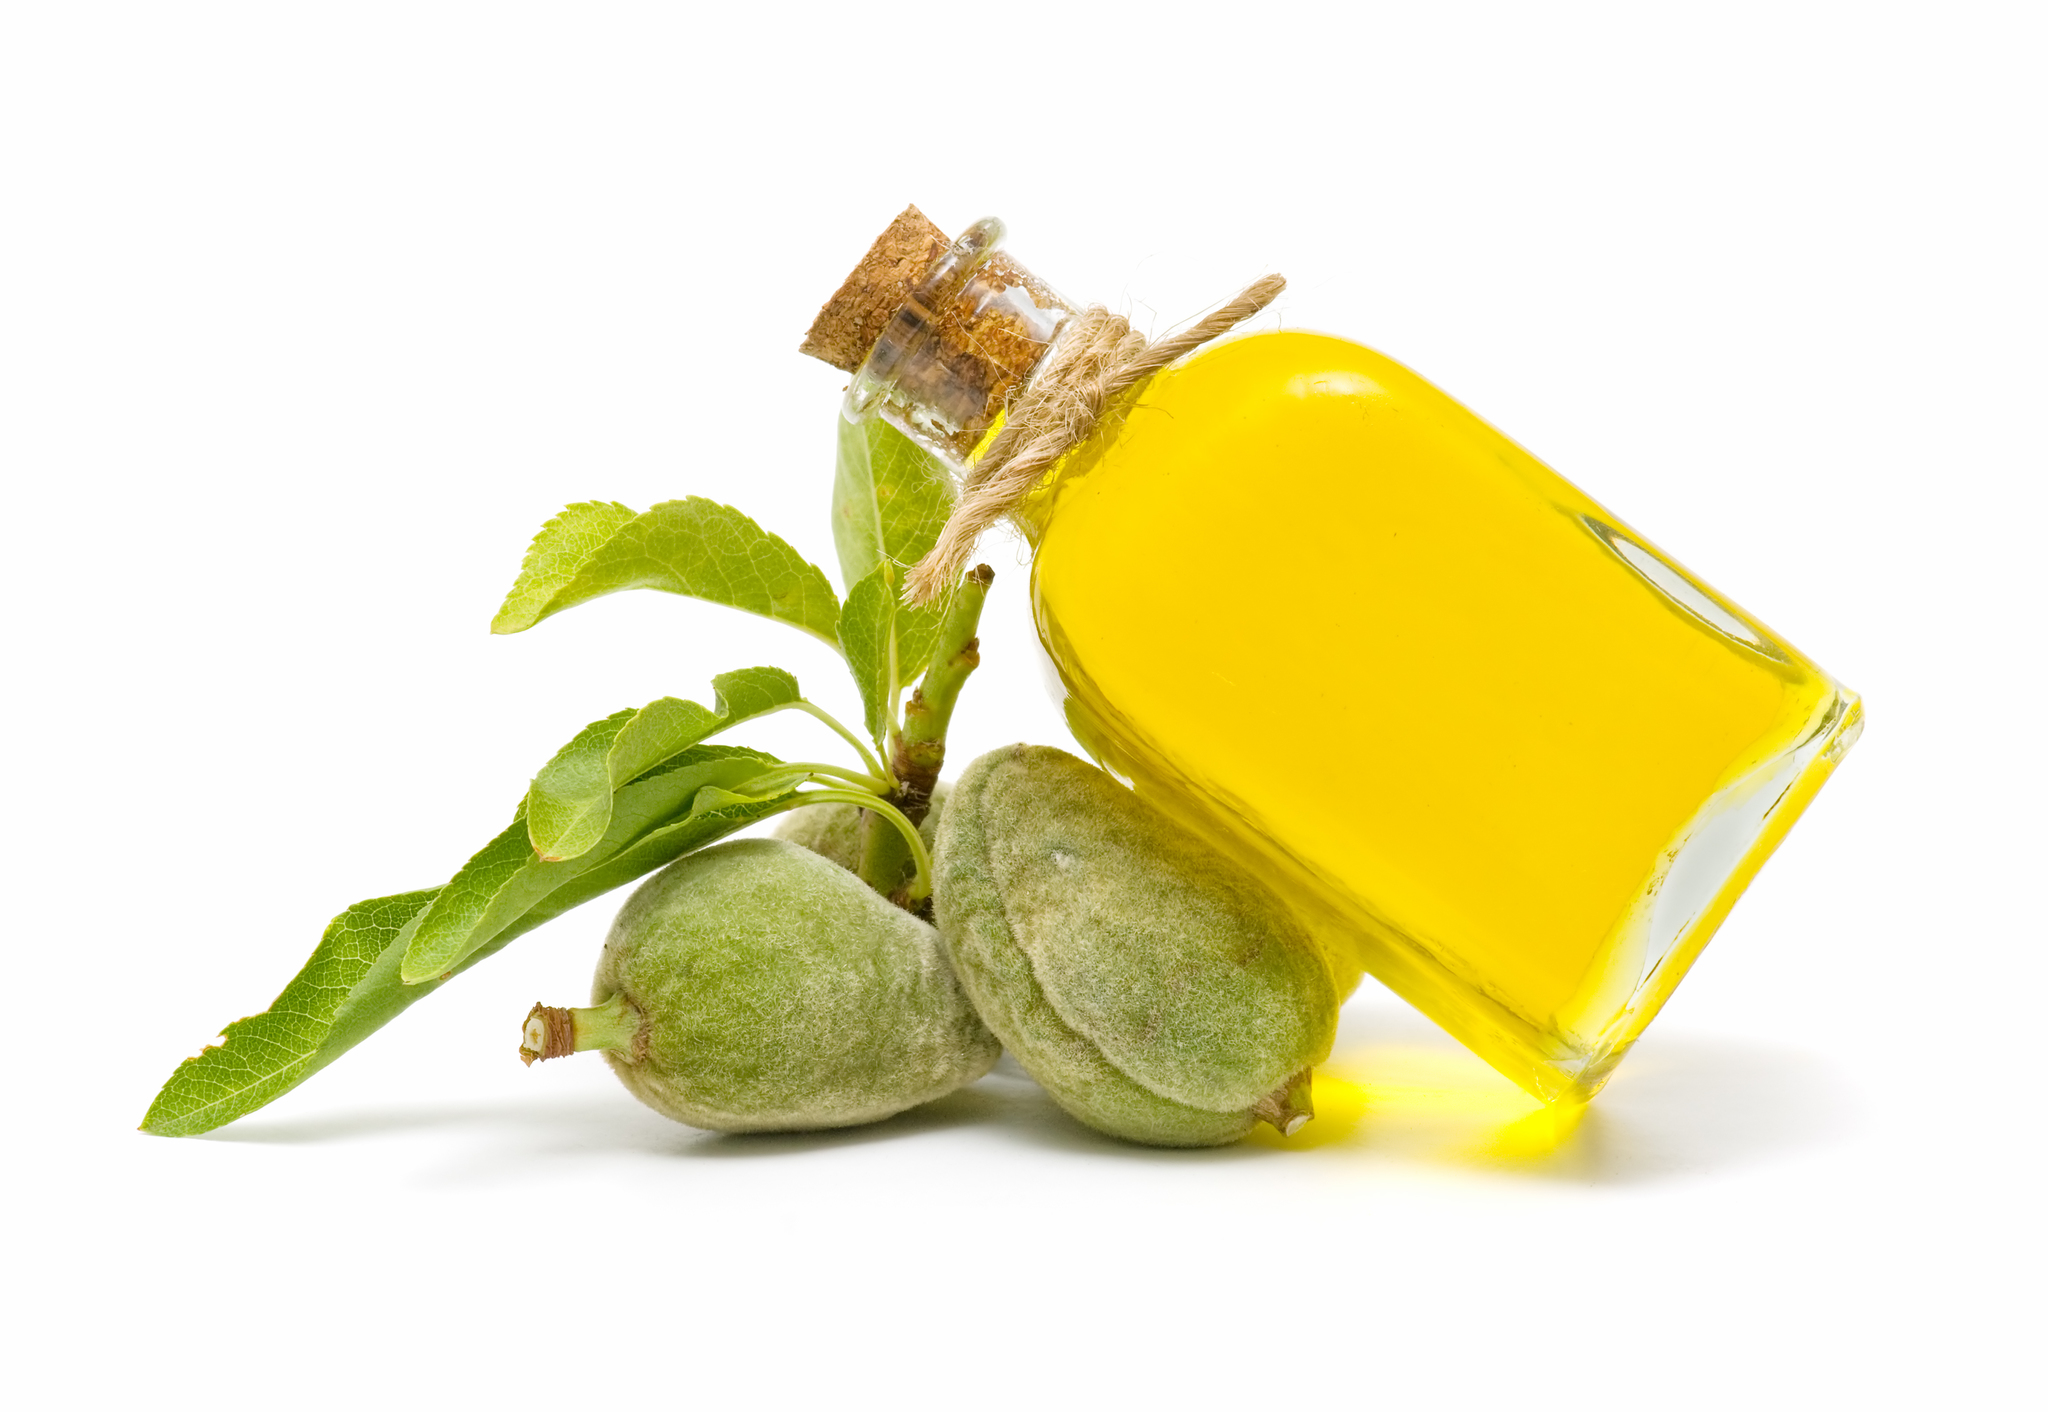 El aceite de almendras tiene propiedades nutritivas y antiinflamatorias por lo que es indicado para nutrir y cuidar la piel, el cabello y las uñas a diario. 